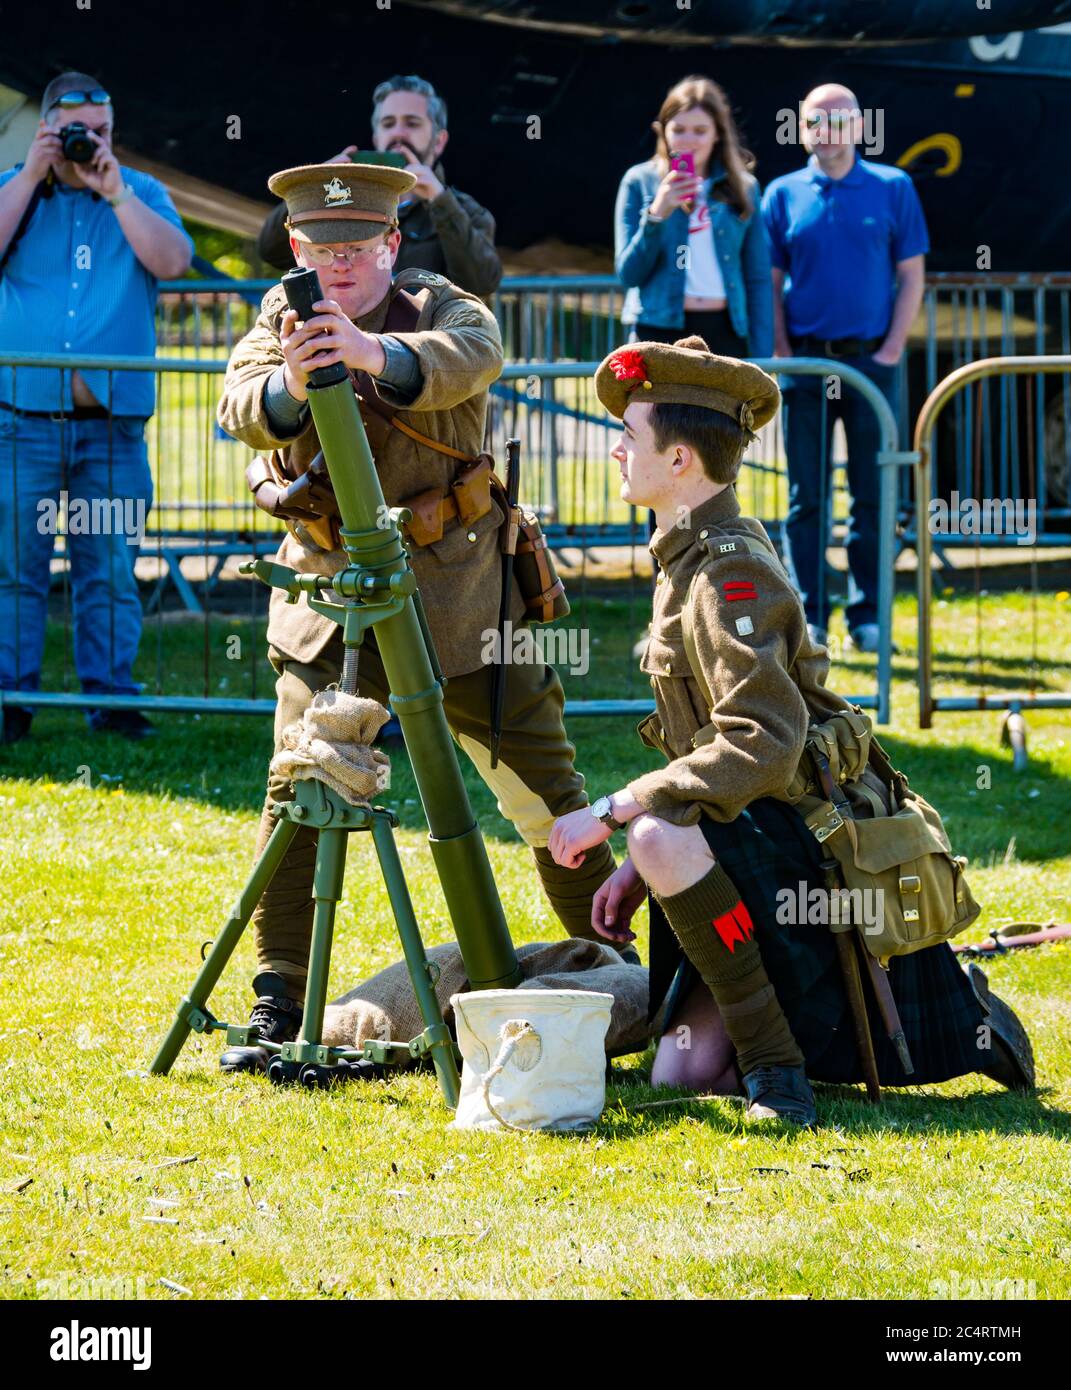 Soldados escoceses disparando mortero, demostración de eventos de experiencia en tiempos de guerra, East Fortune, East Lothian, Scotland, UK Foto de stock